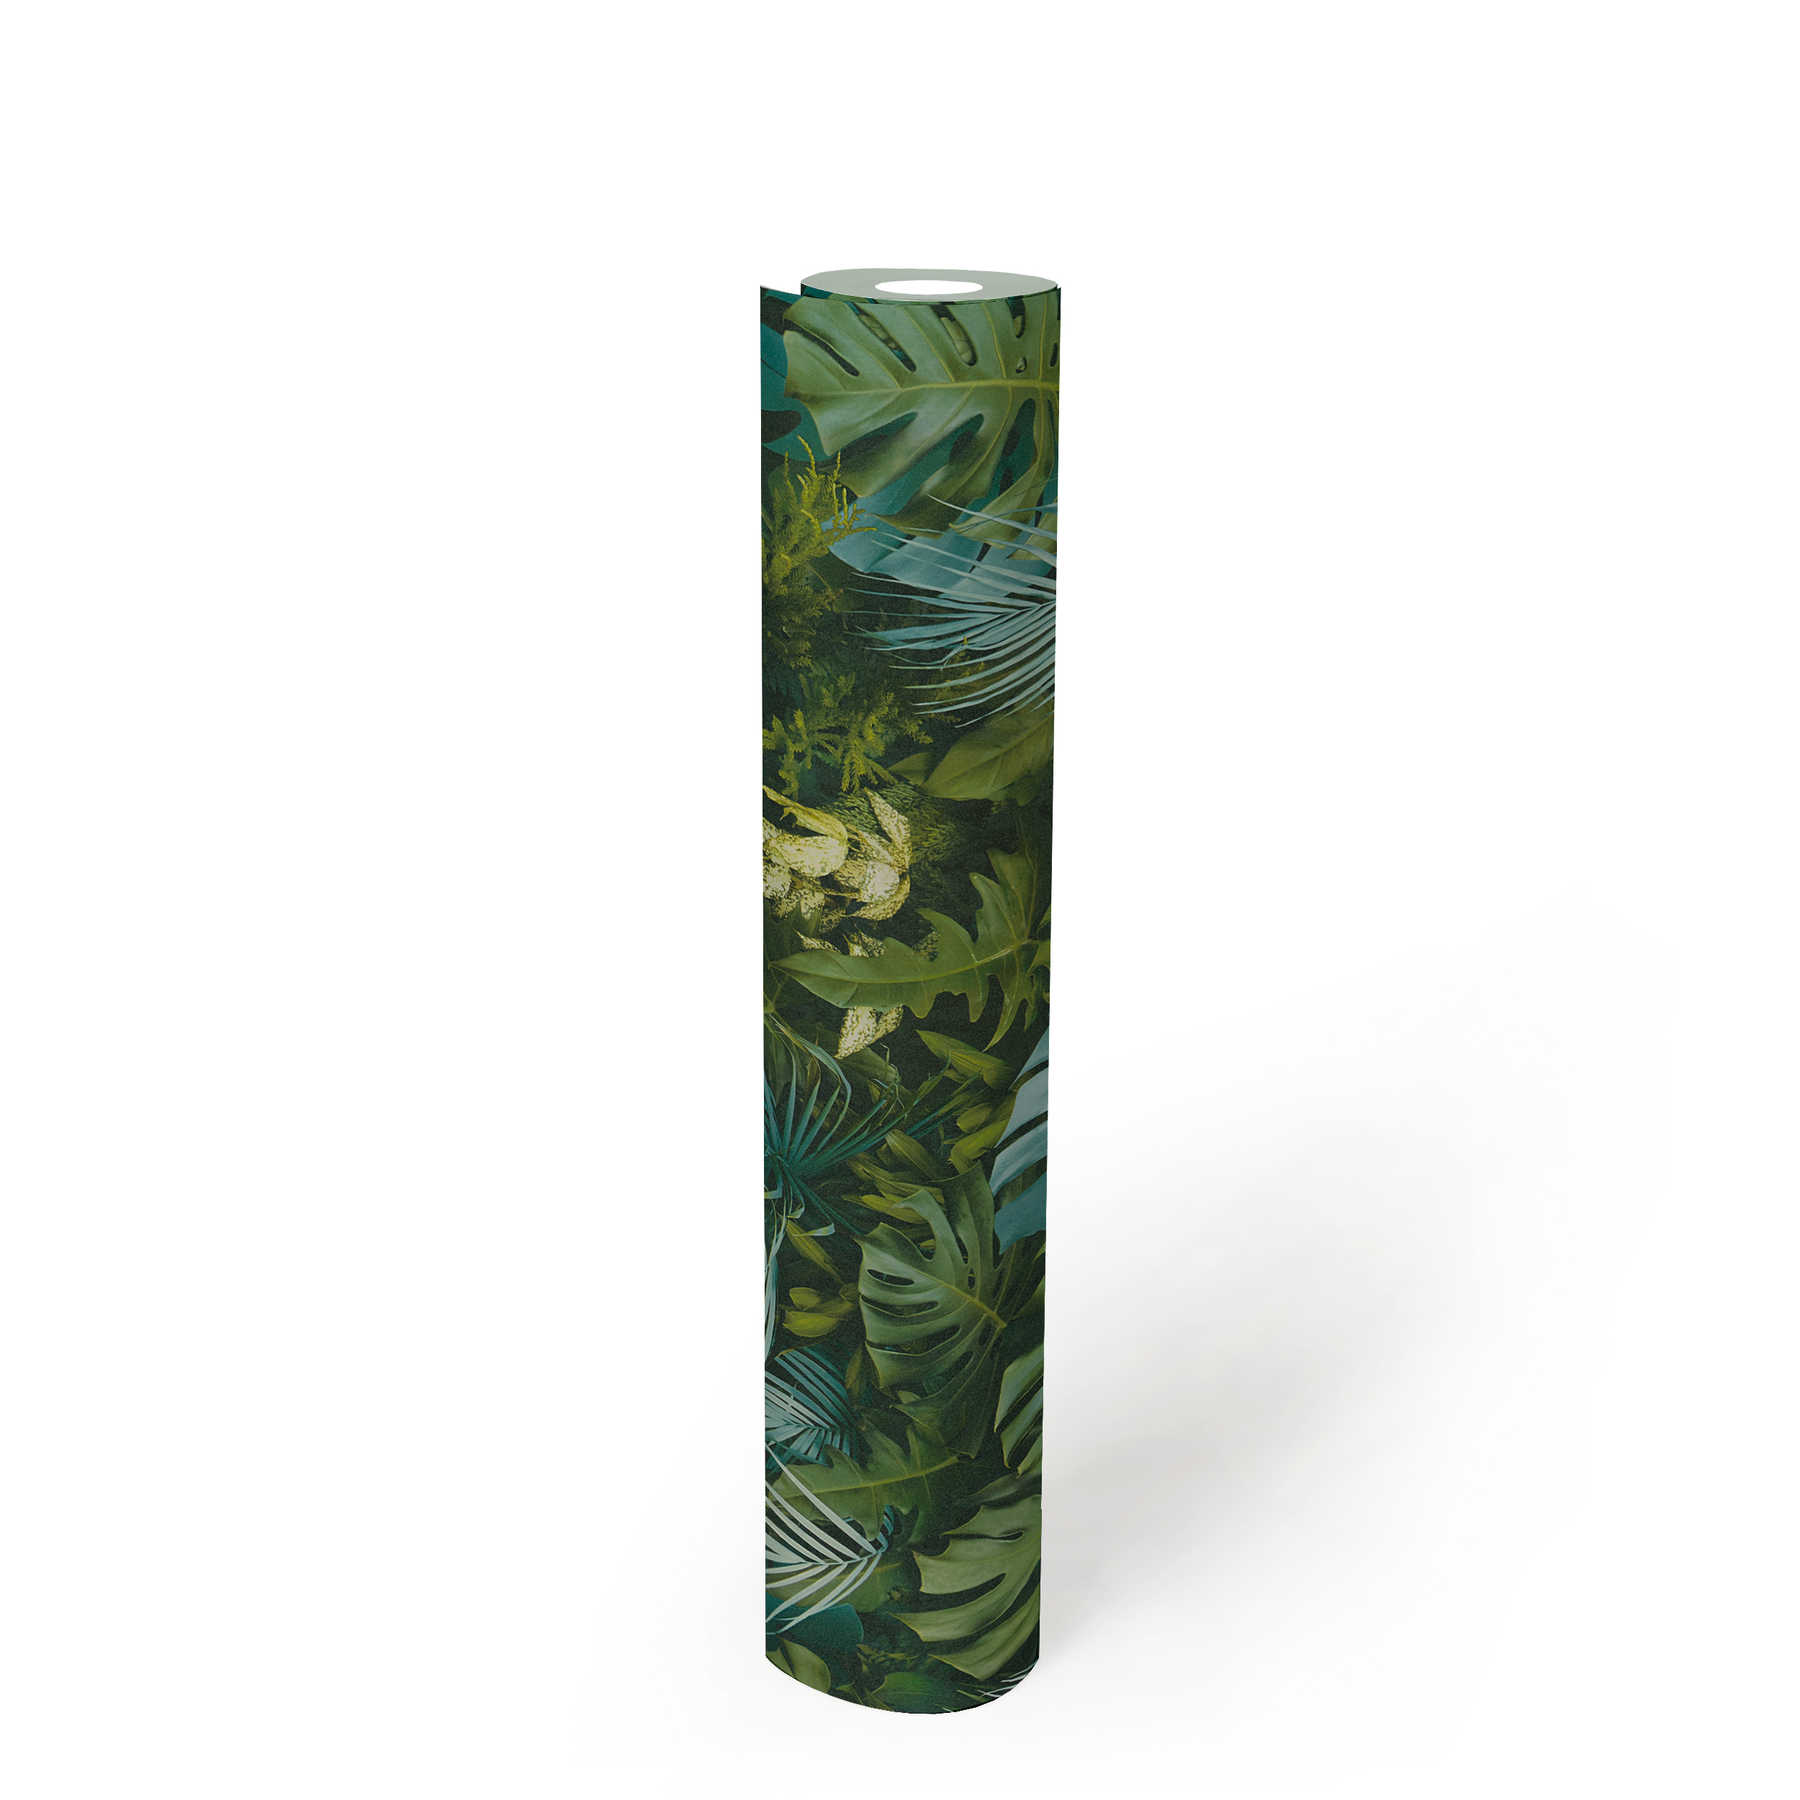             Papel pintado Bosque de hojas verdes, realista, acentos de color - verde, azul
        